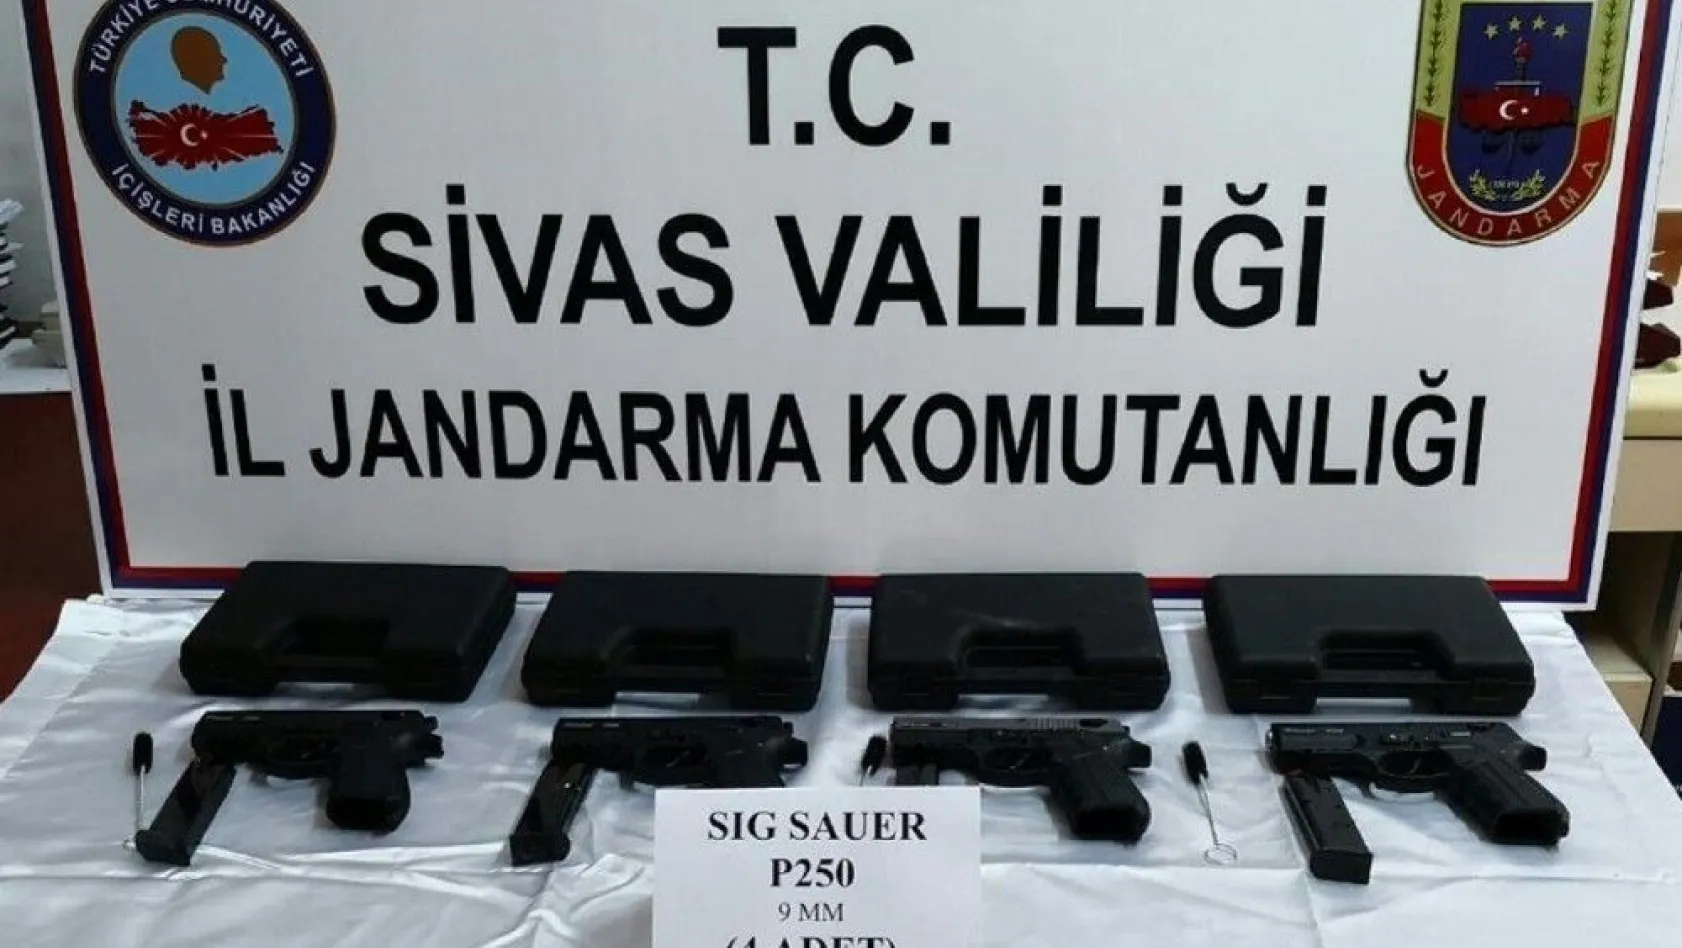 Sivas'ta silah kaçakçılığı operasyonu
